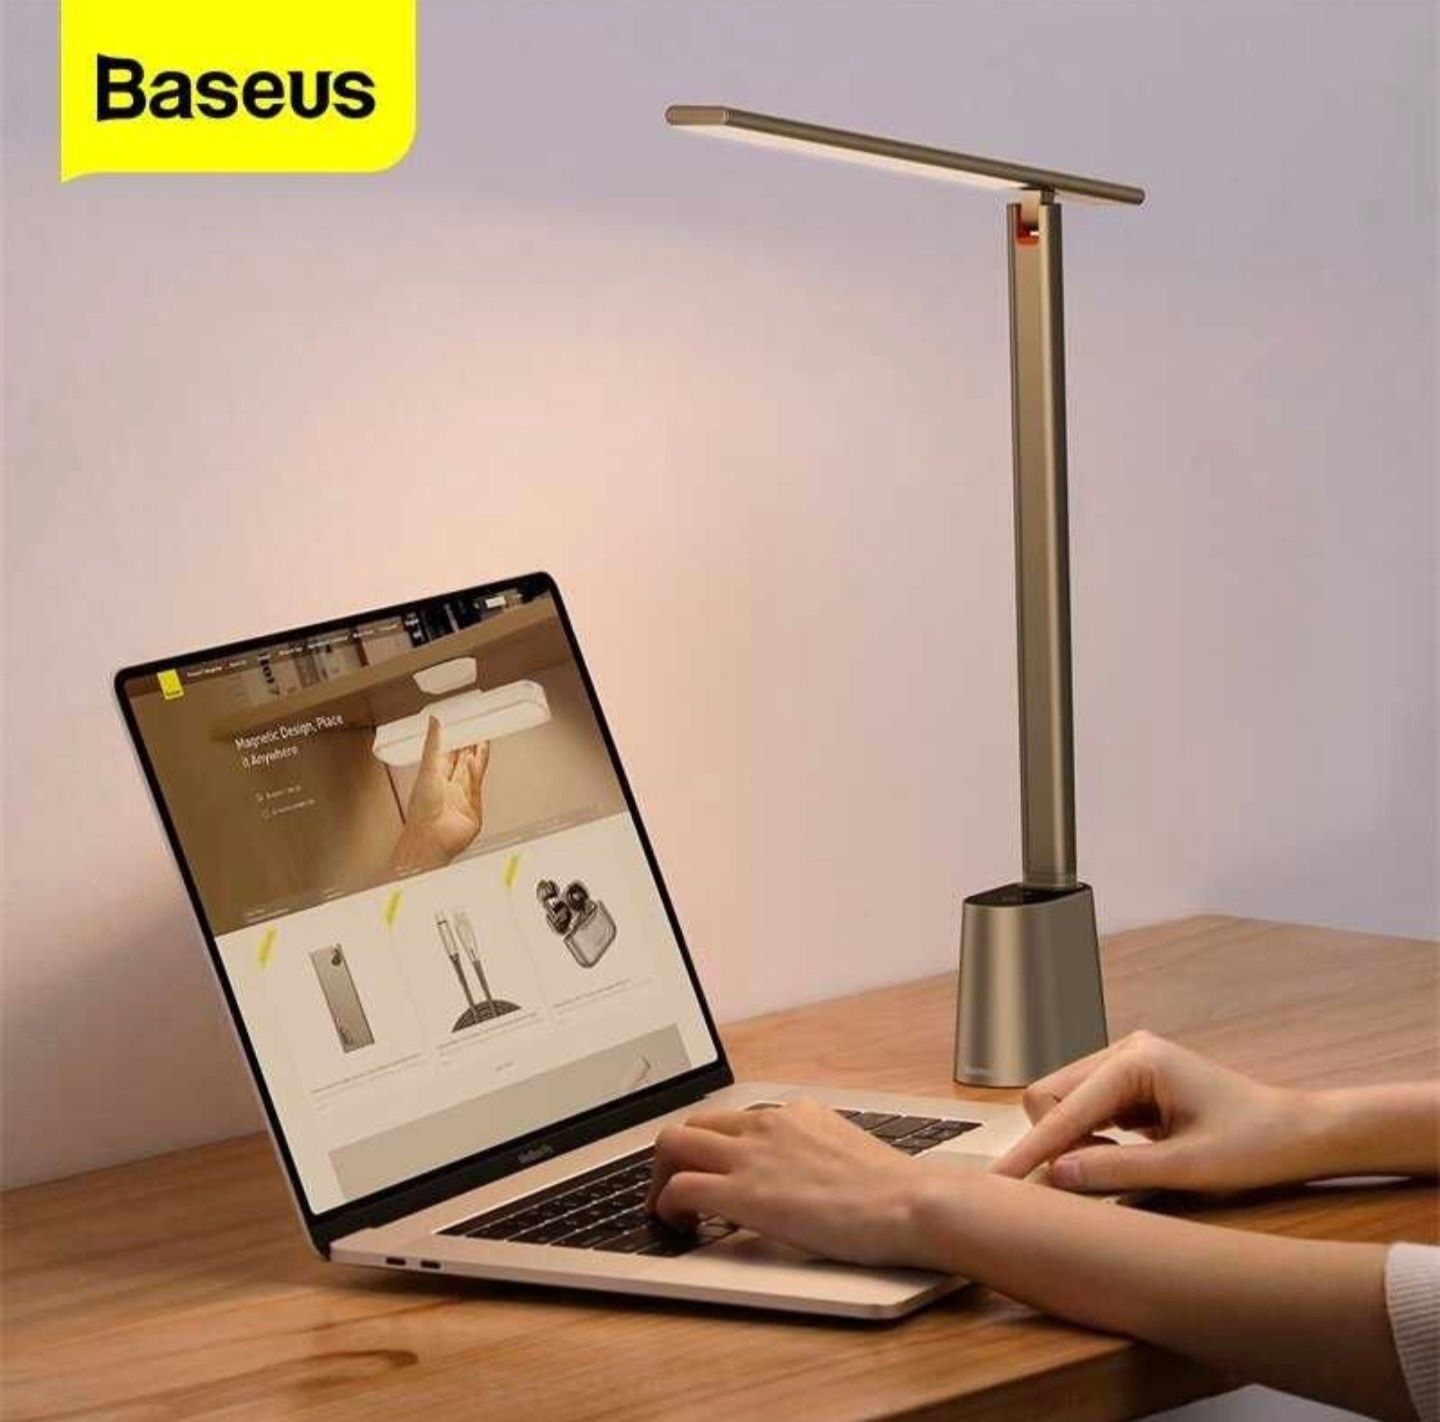 Светодиодная настольная лампа Baseus, сенсорное управление + Доставка